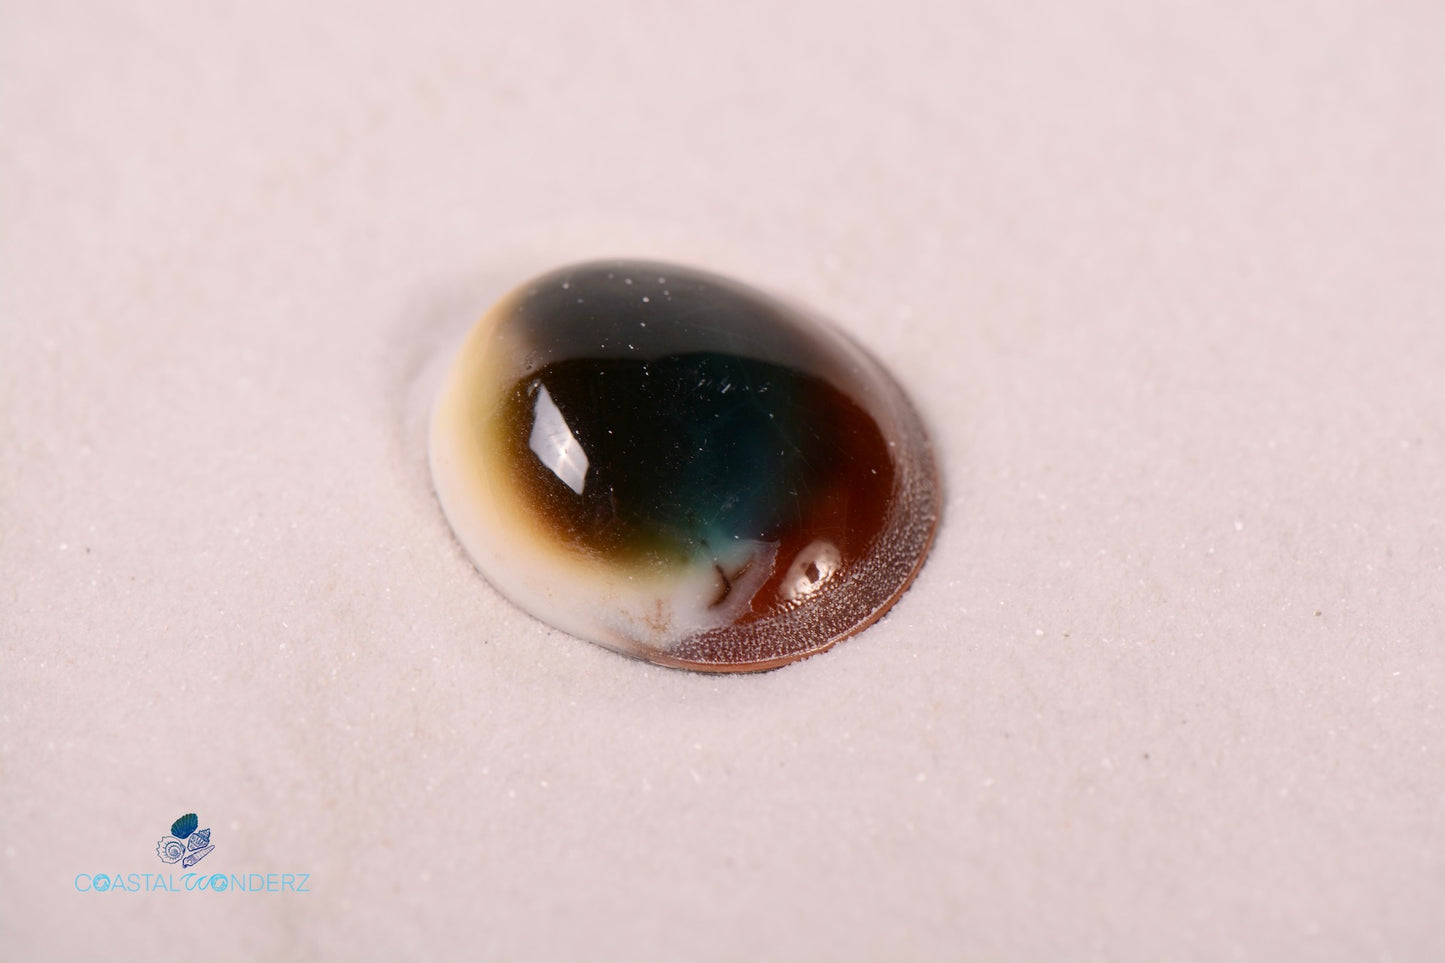 Green Cat Eye Shell (Lunella Smaragda)